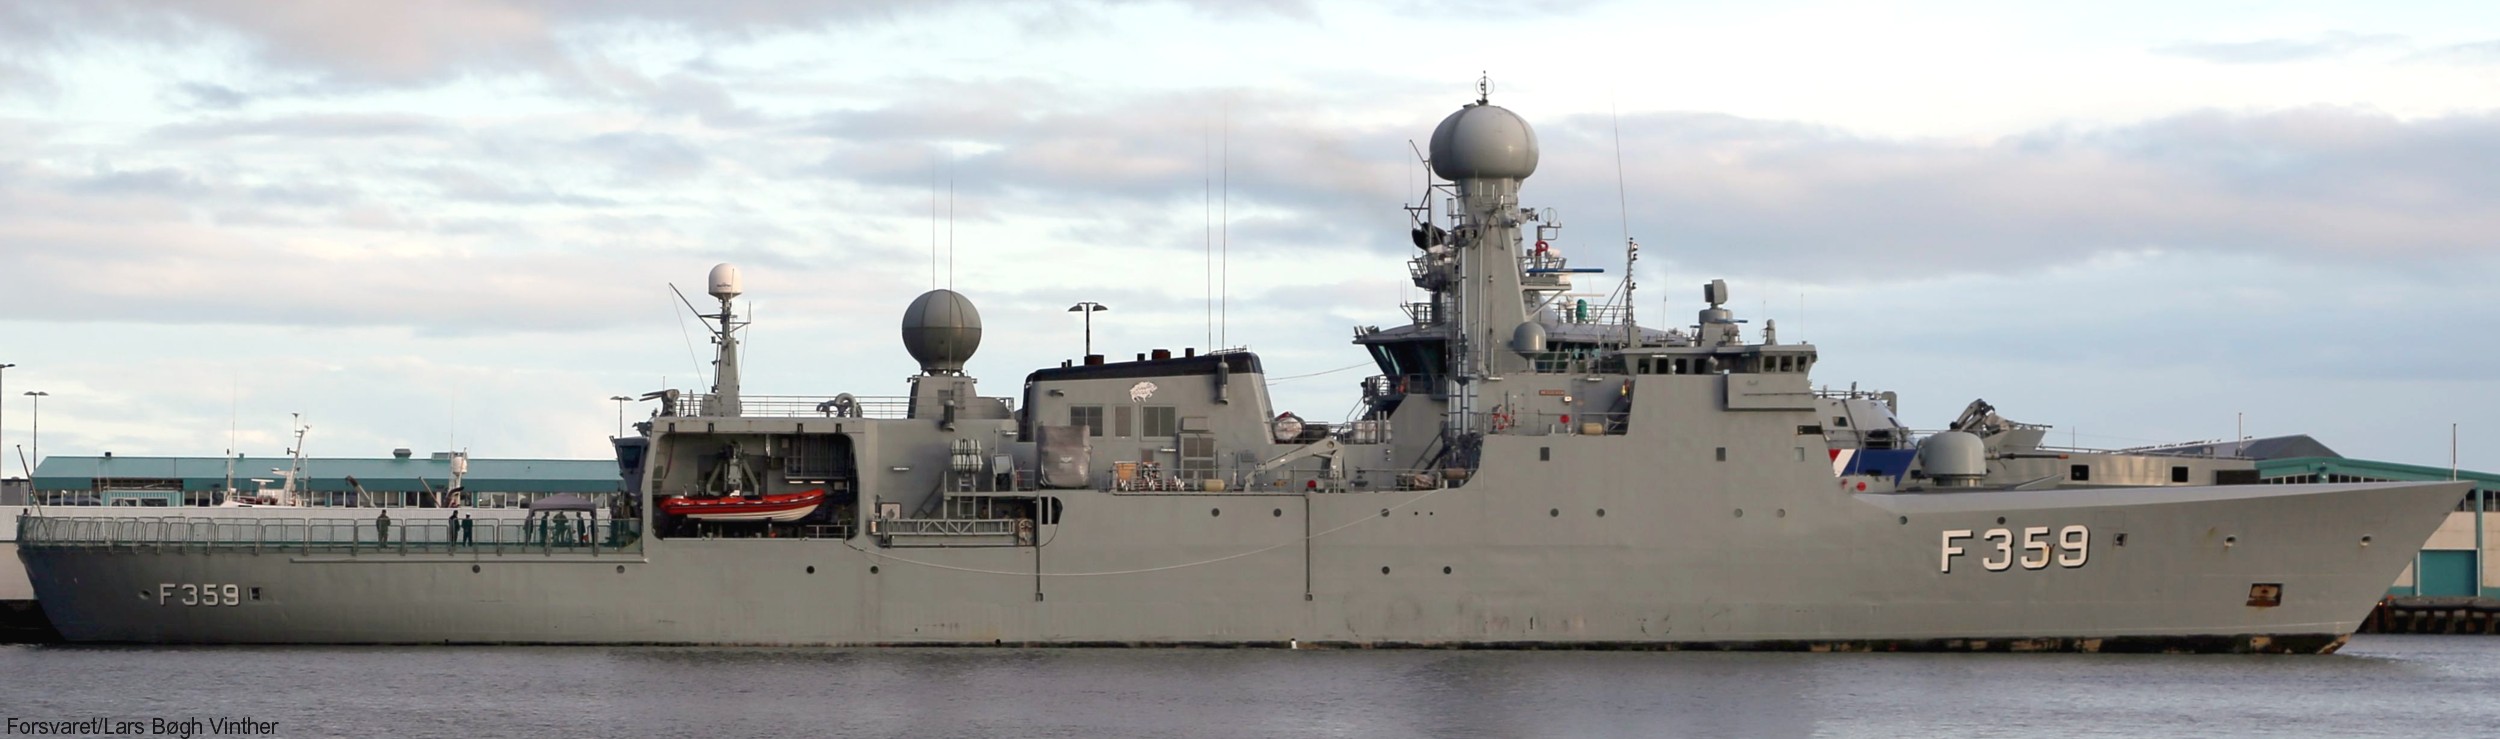 f-359 hdms vaedderen thetis class ocean patrol frigate royal danish navy kongelige danske marine kdm inspektionsskibet 04